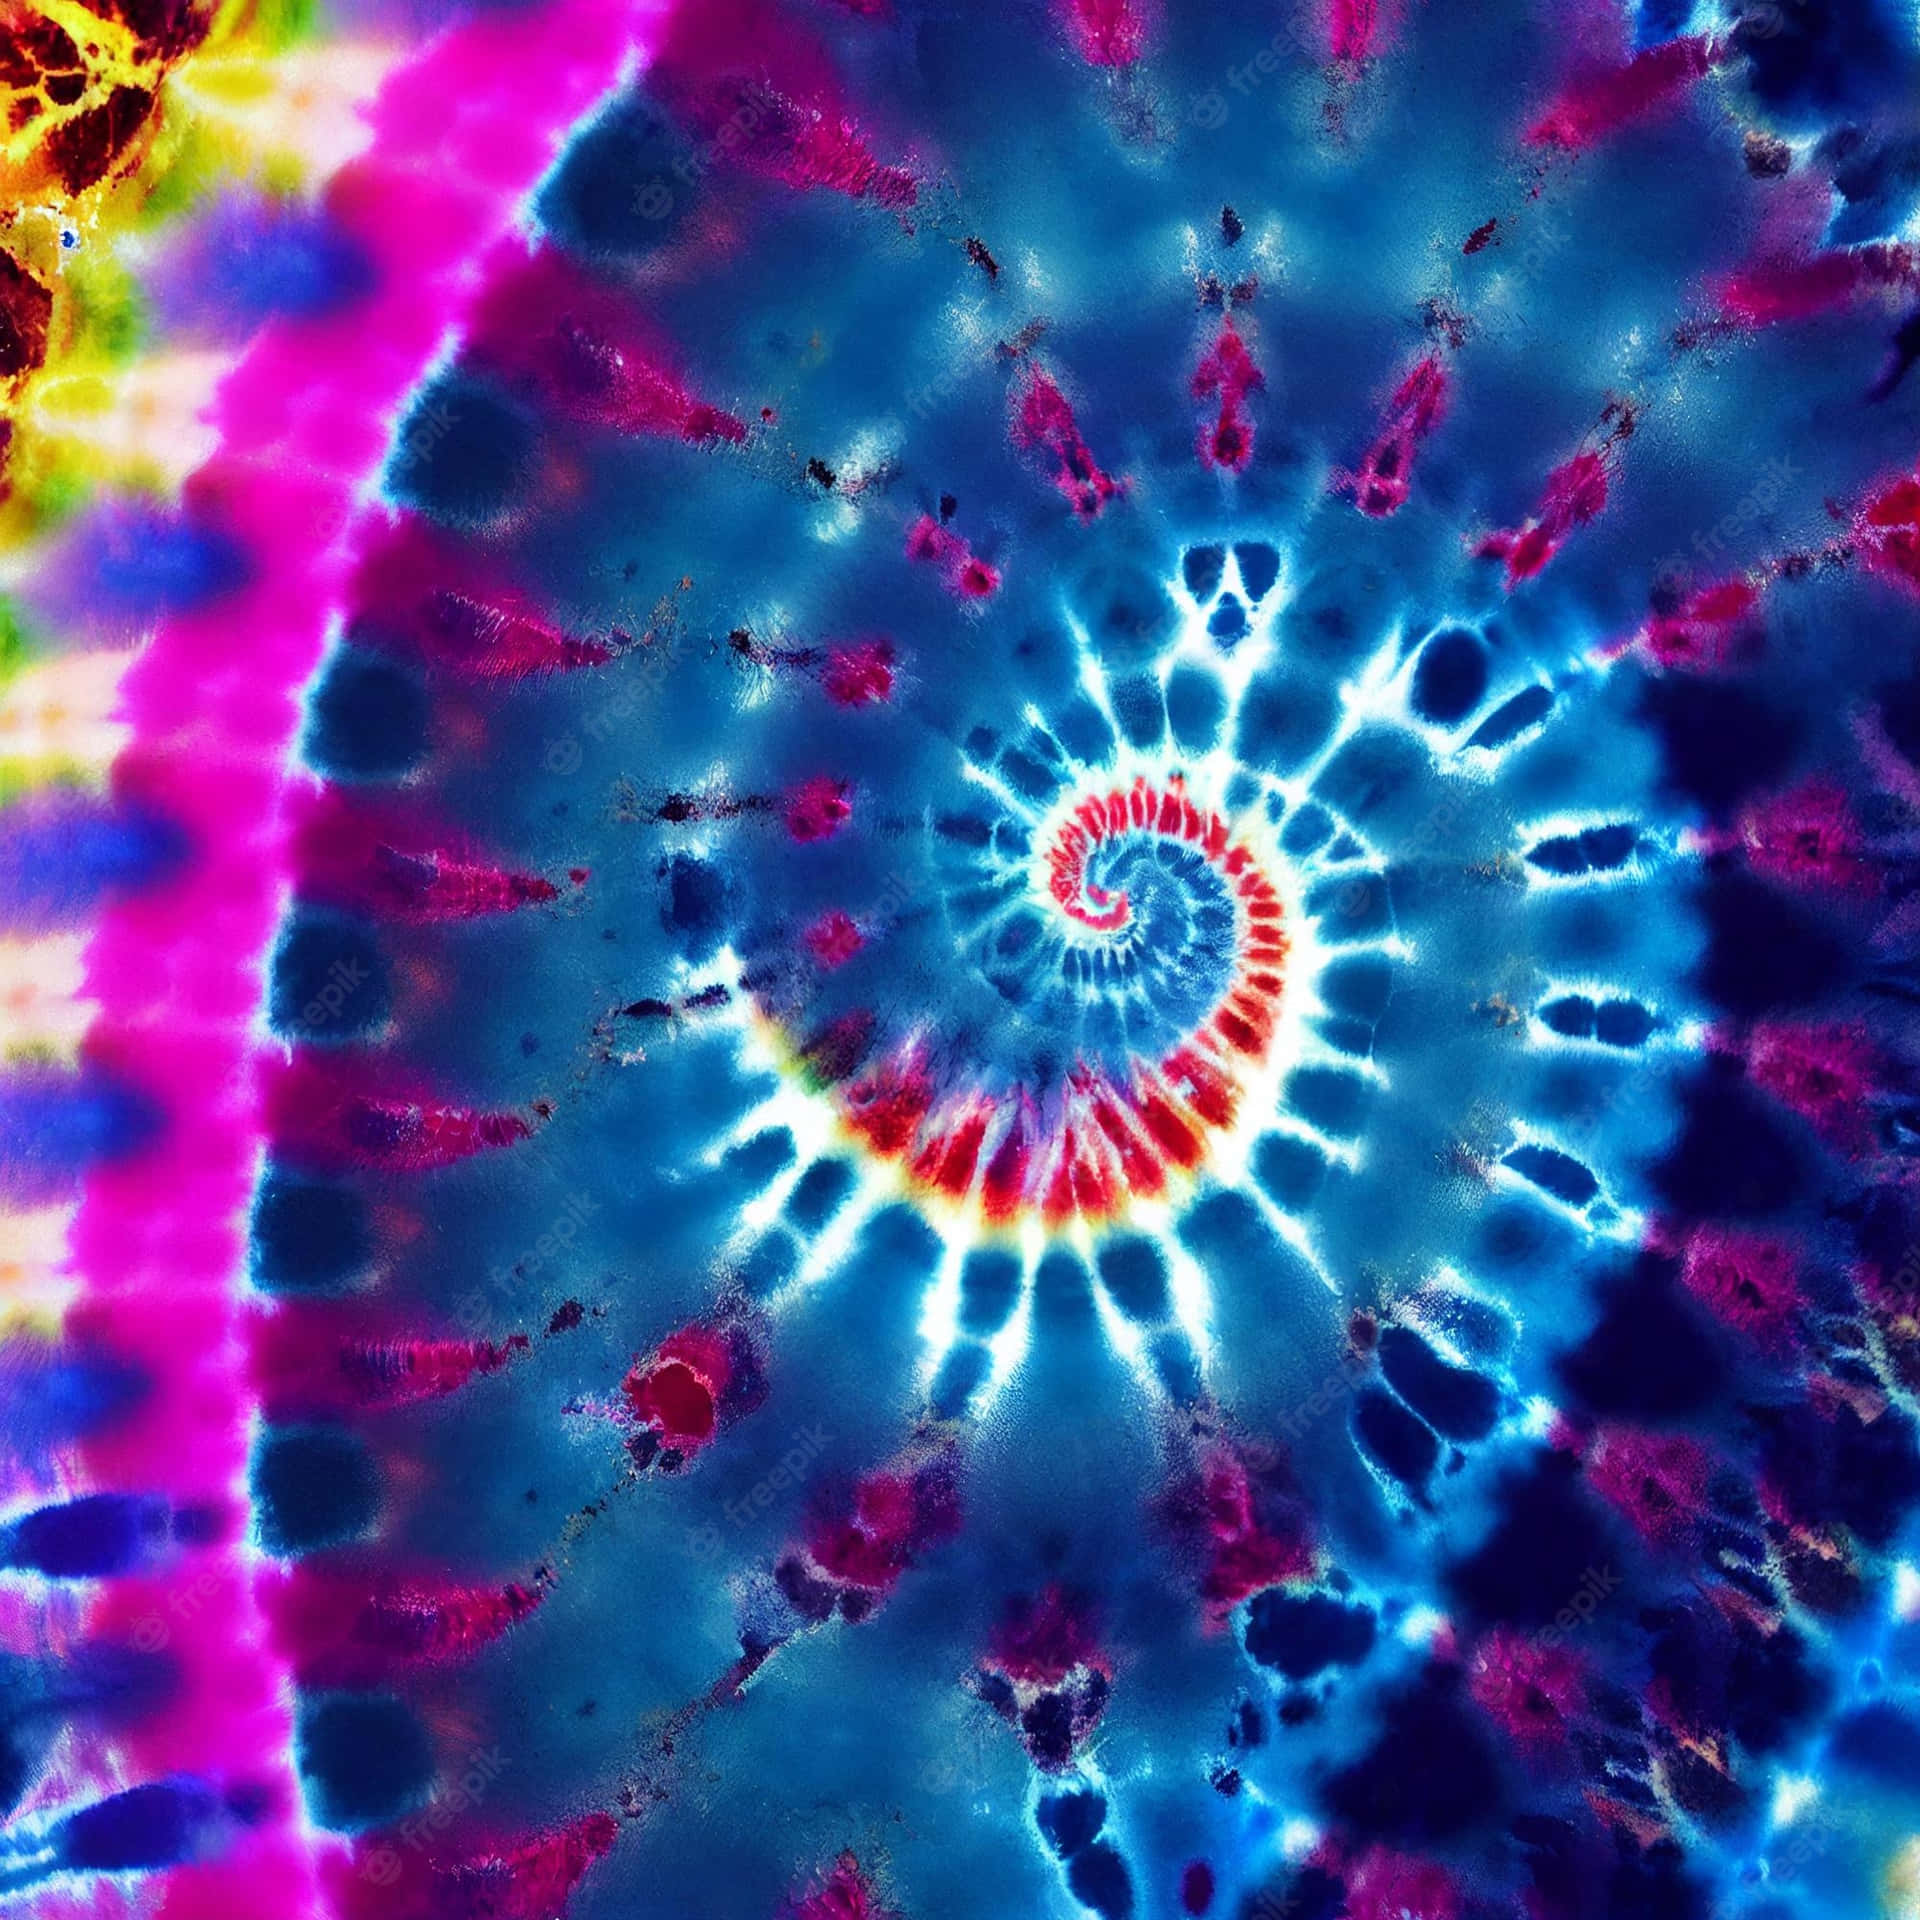 Unpatrón En Espiral Teñido Con Colores Arcoíris De Fondo Fondo de pantalla